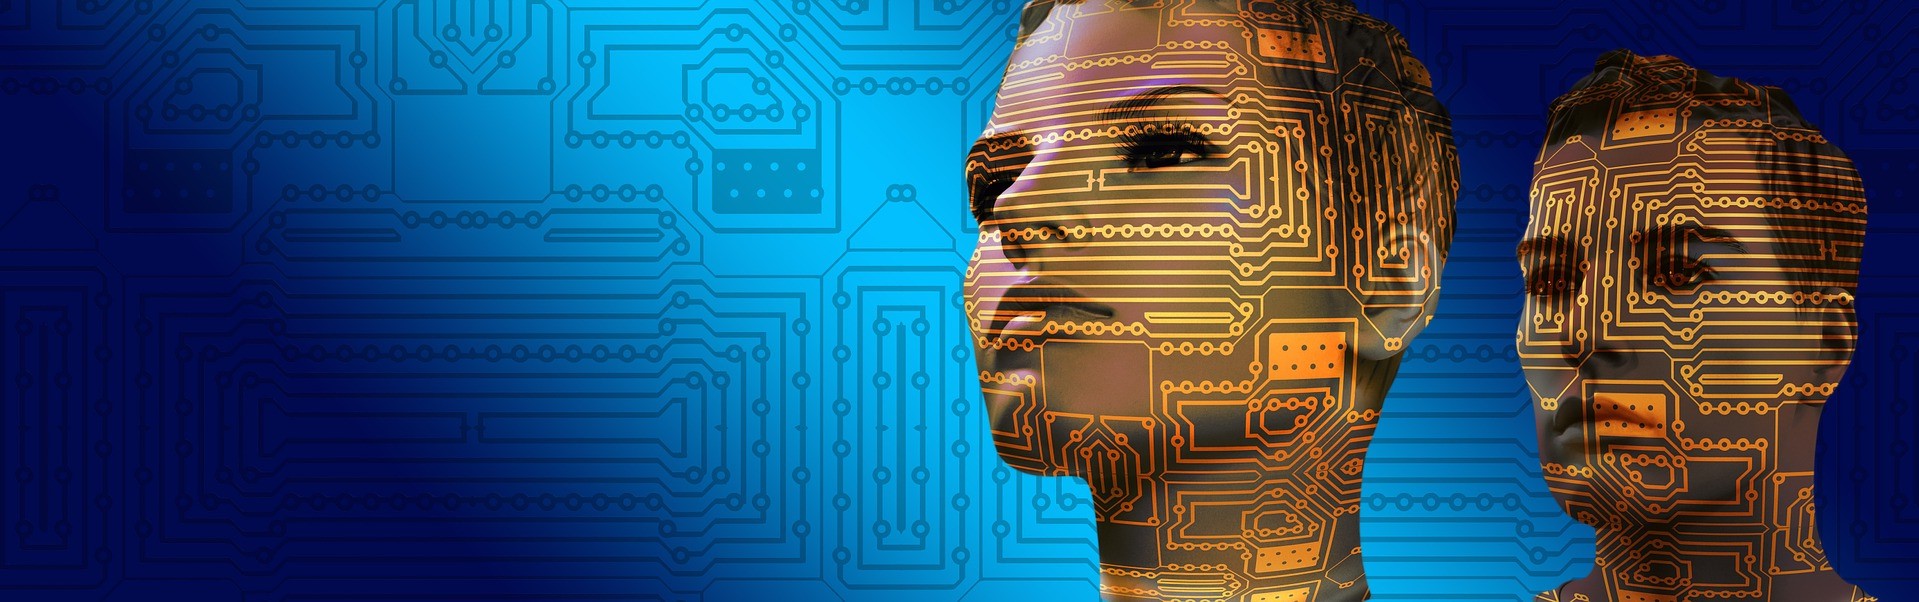 La Inteligencia Artificial, una nueva manera de hacer las cosas en la industria.